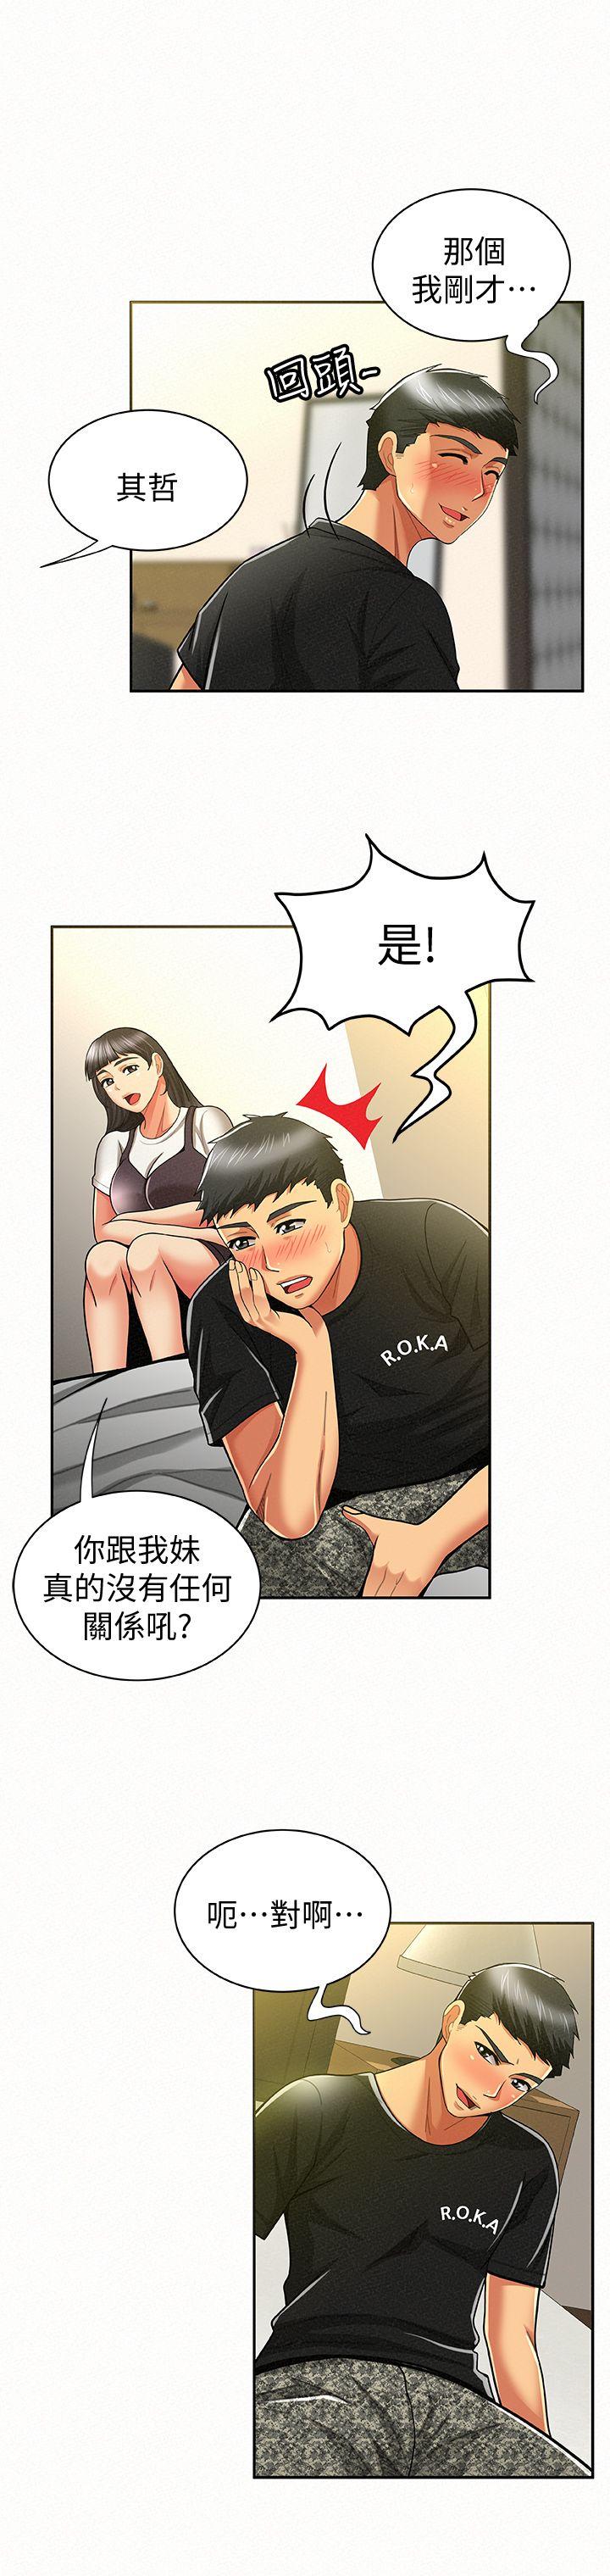 韩国污漫画 報告夫人 第11话-终于到手的诱惑机会 11